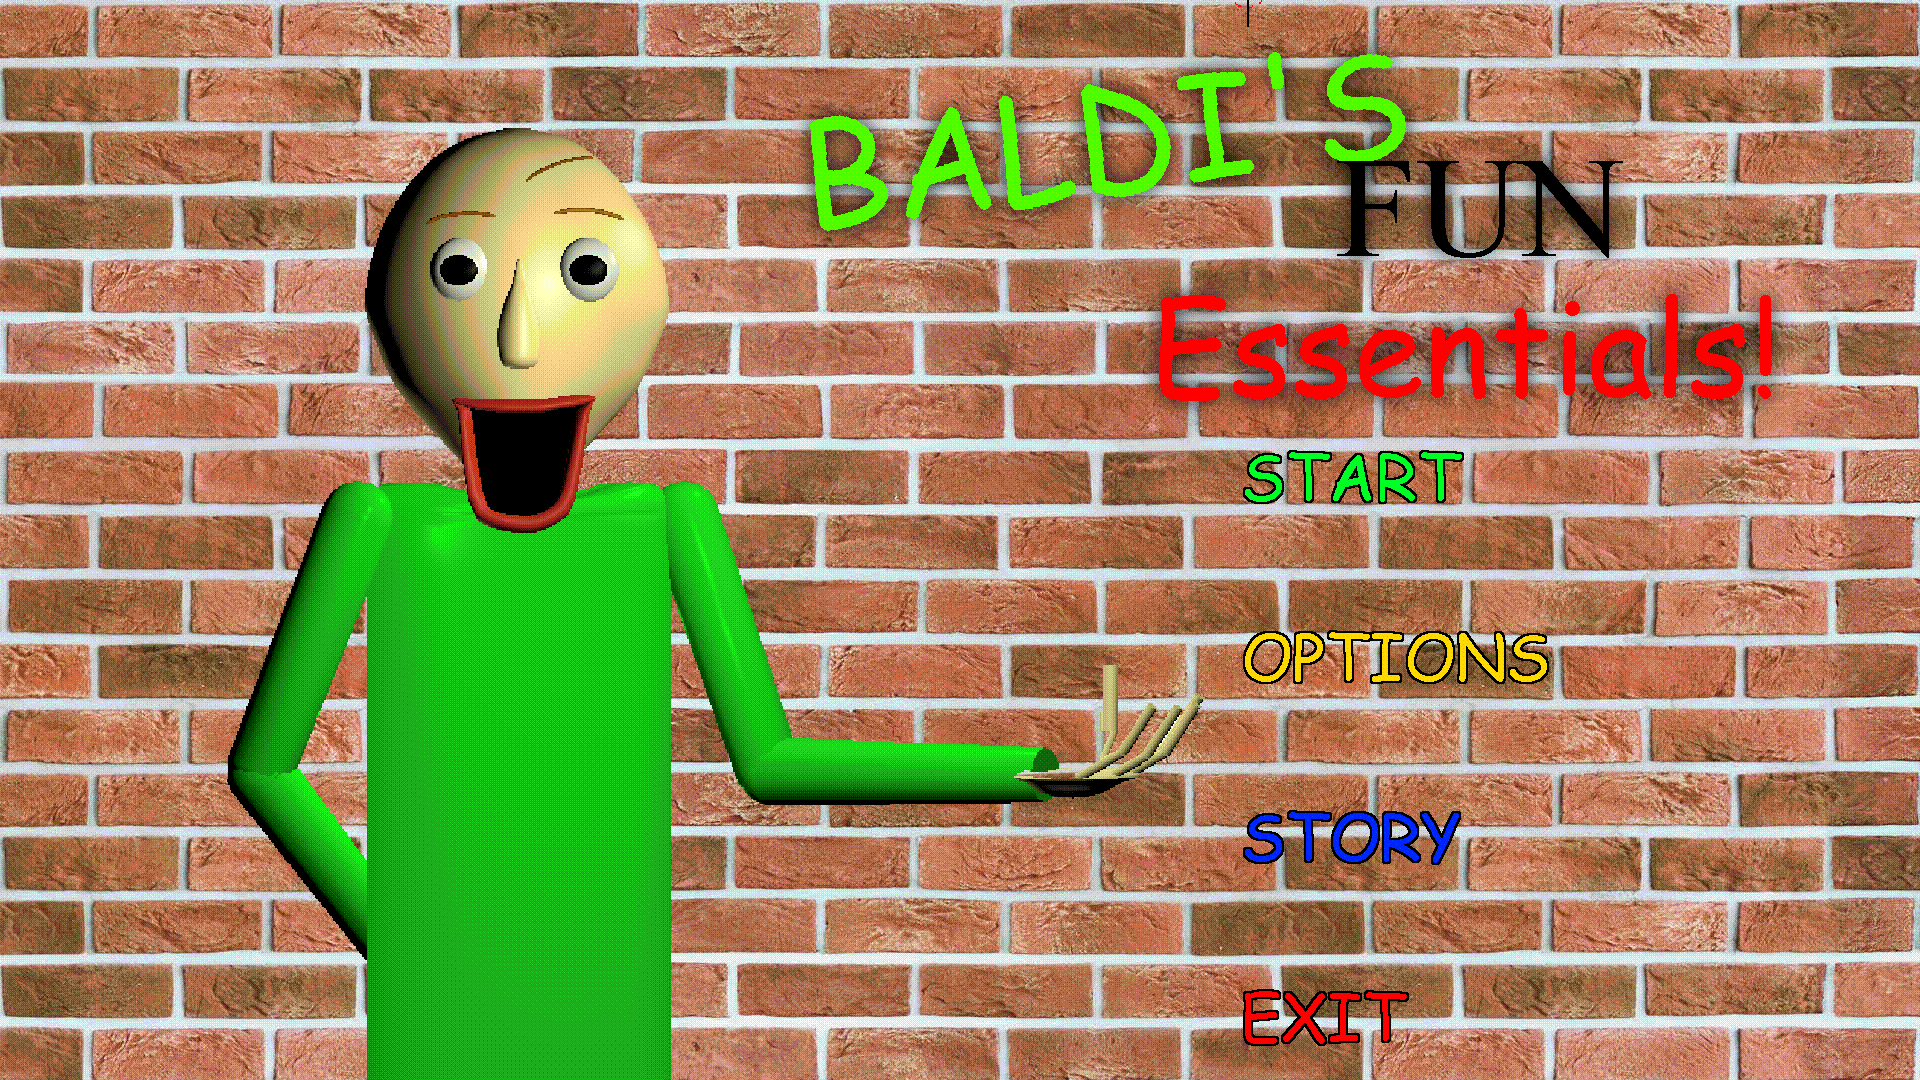 Tag (Baldi's Basics), Baldi's Basics Fanon Wiki